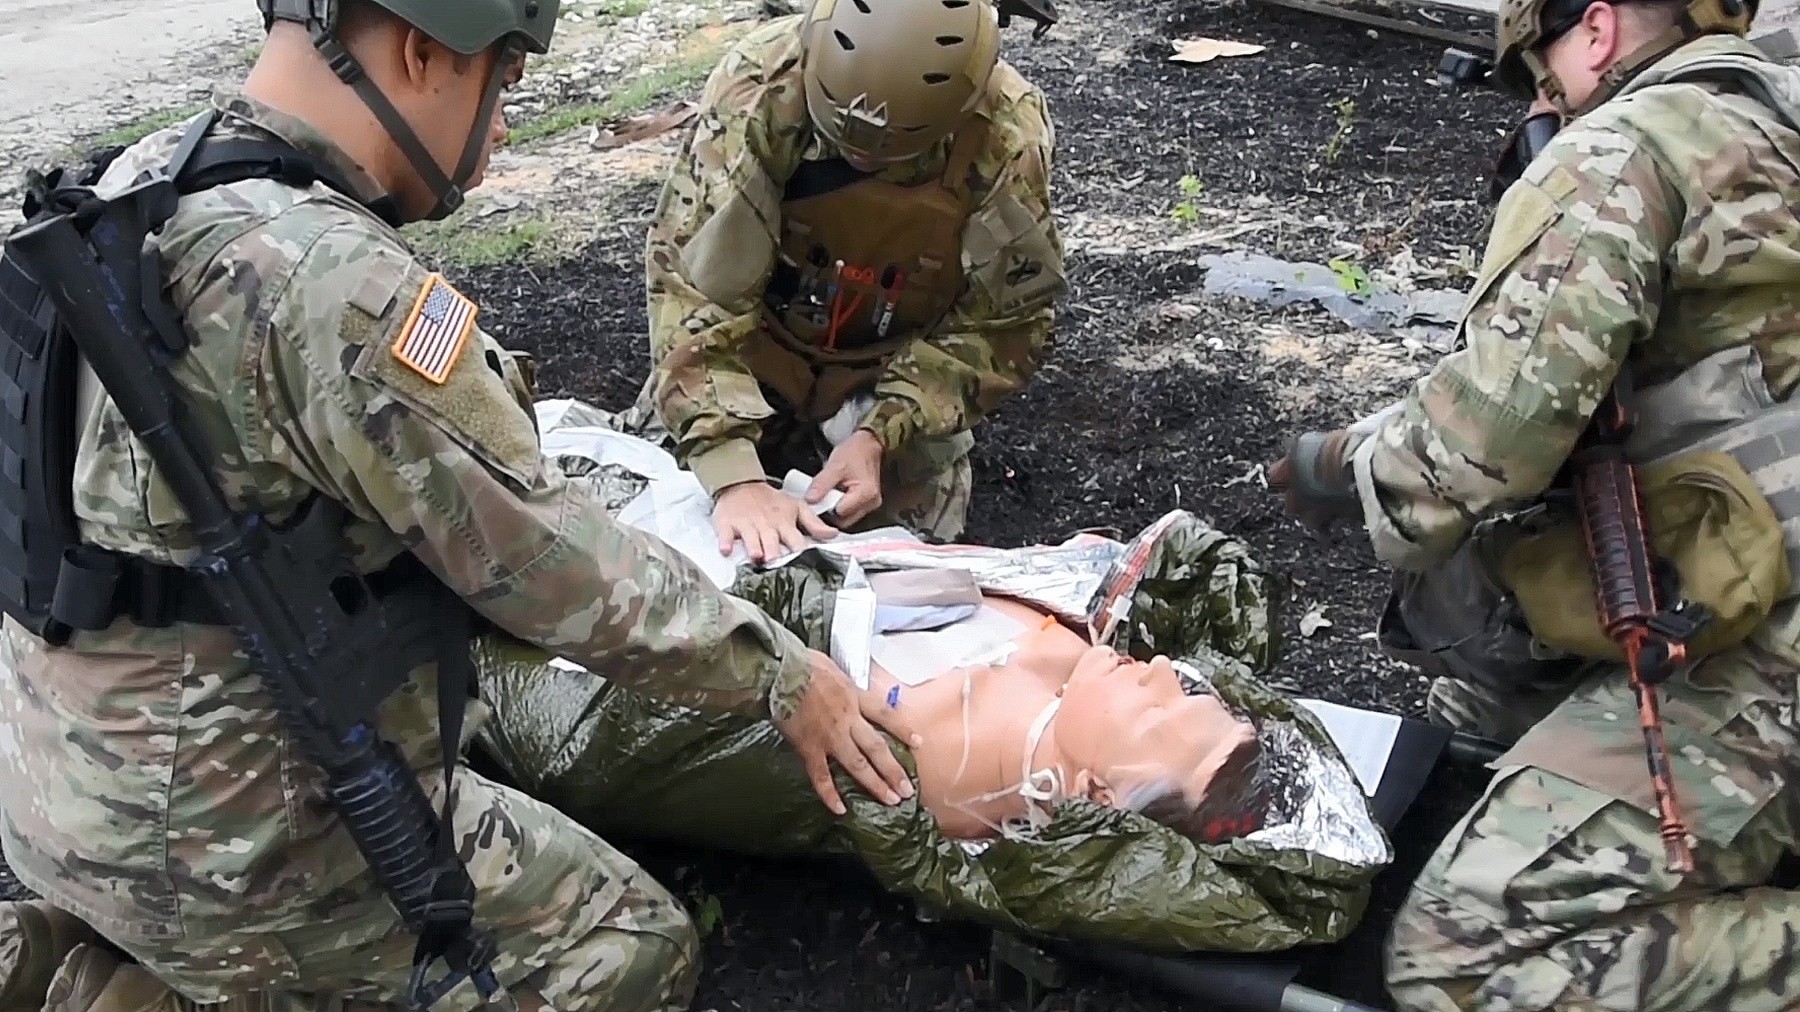 Army instructors reenact a trauma scenario.